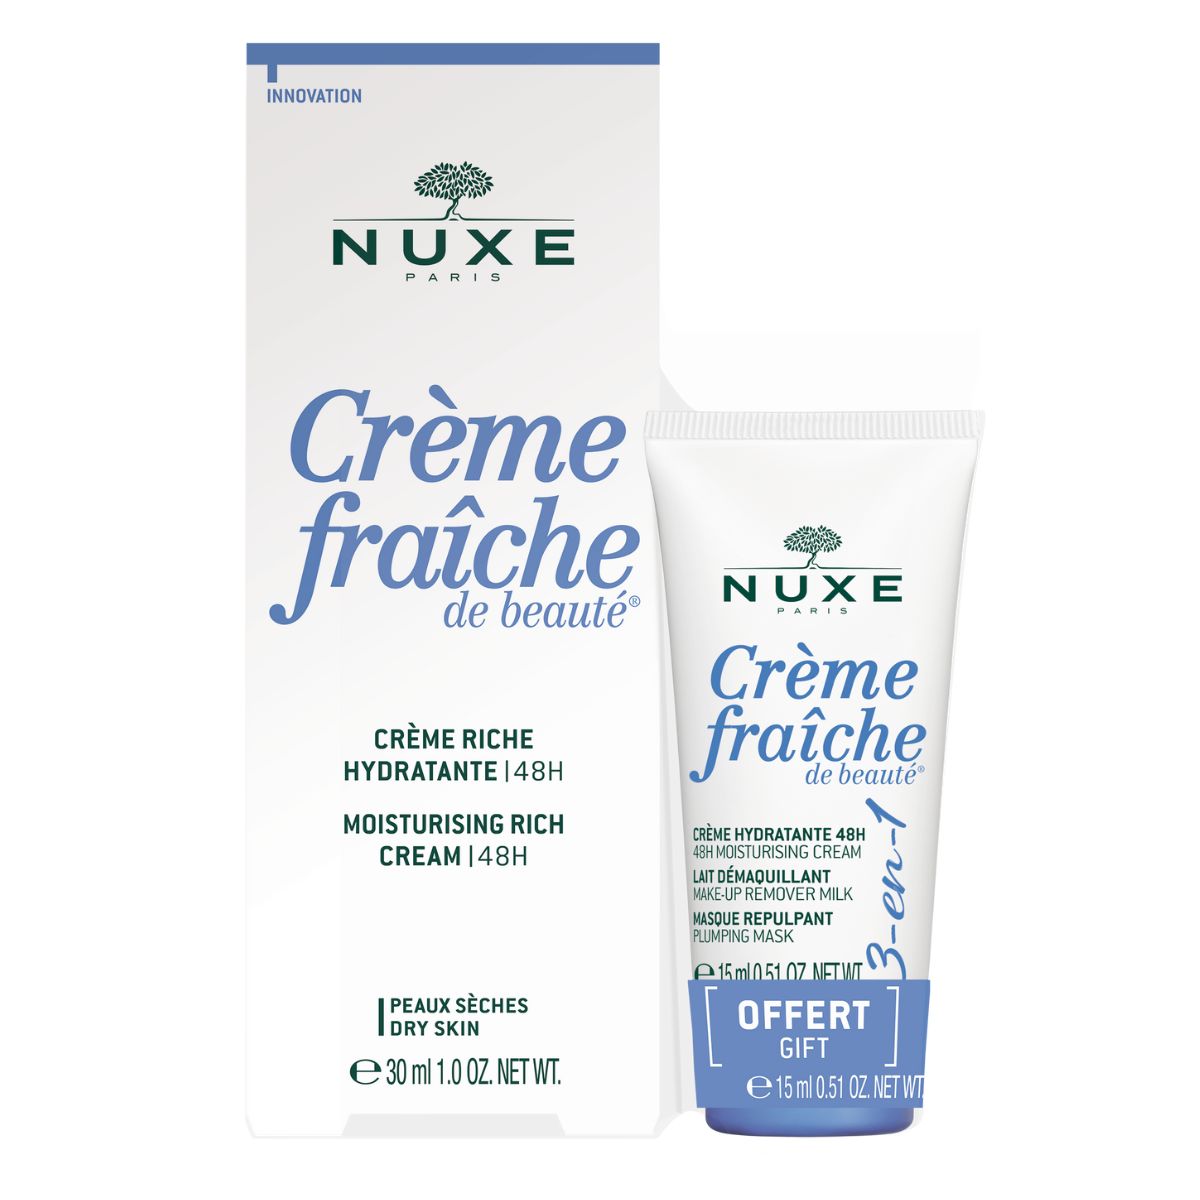 NUXE Crème Fraiche Moisturising Rich Crème 48hours FREE 3in1 15ml.